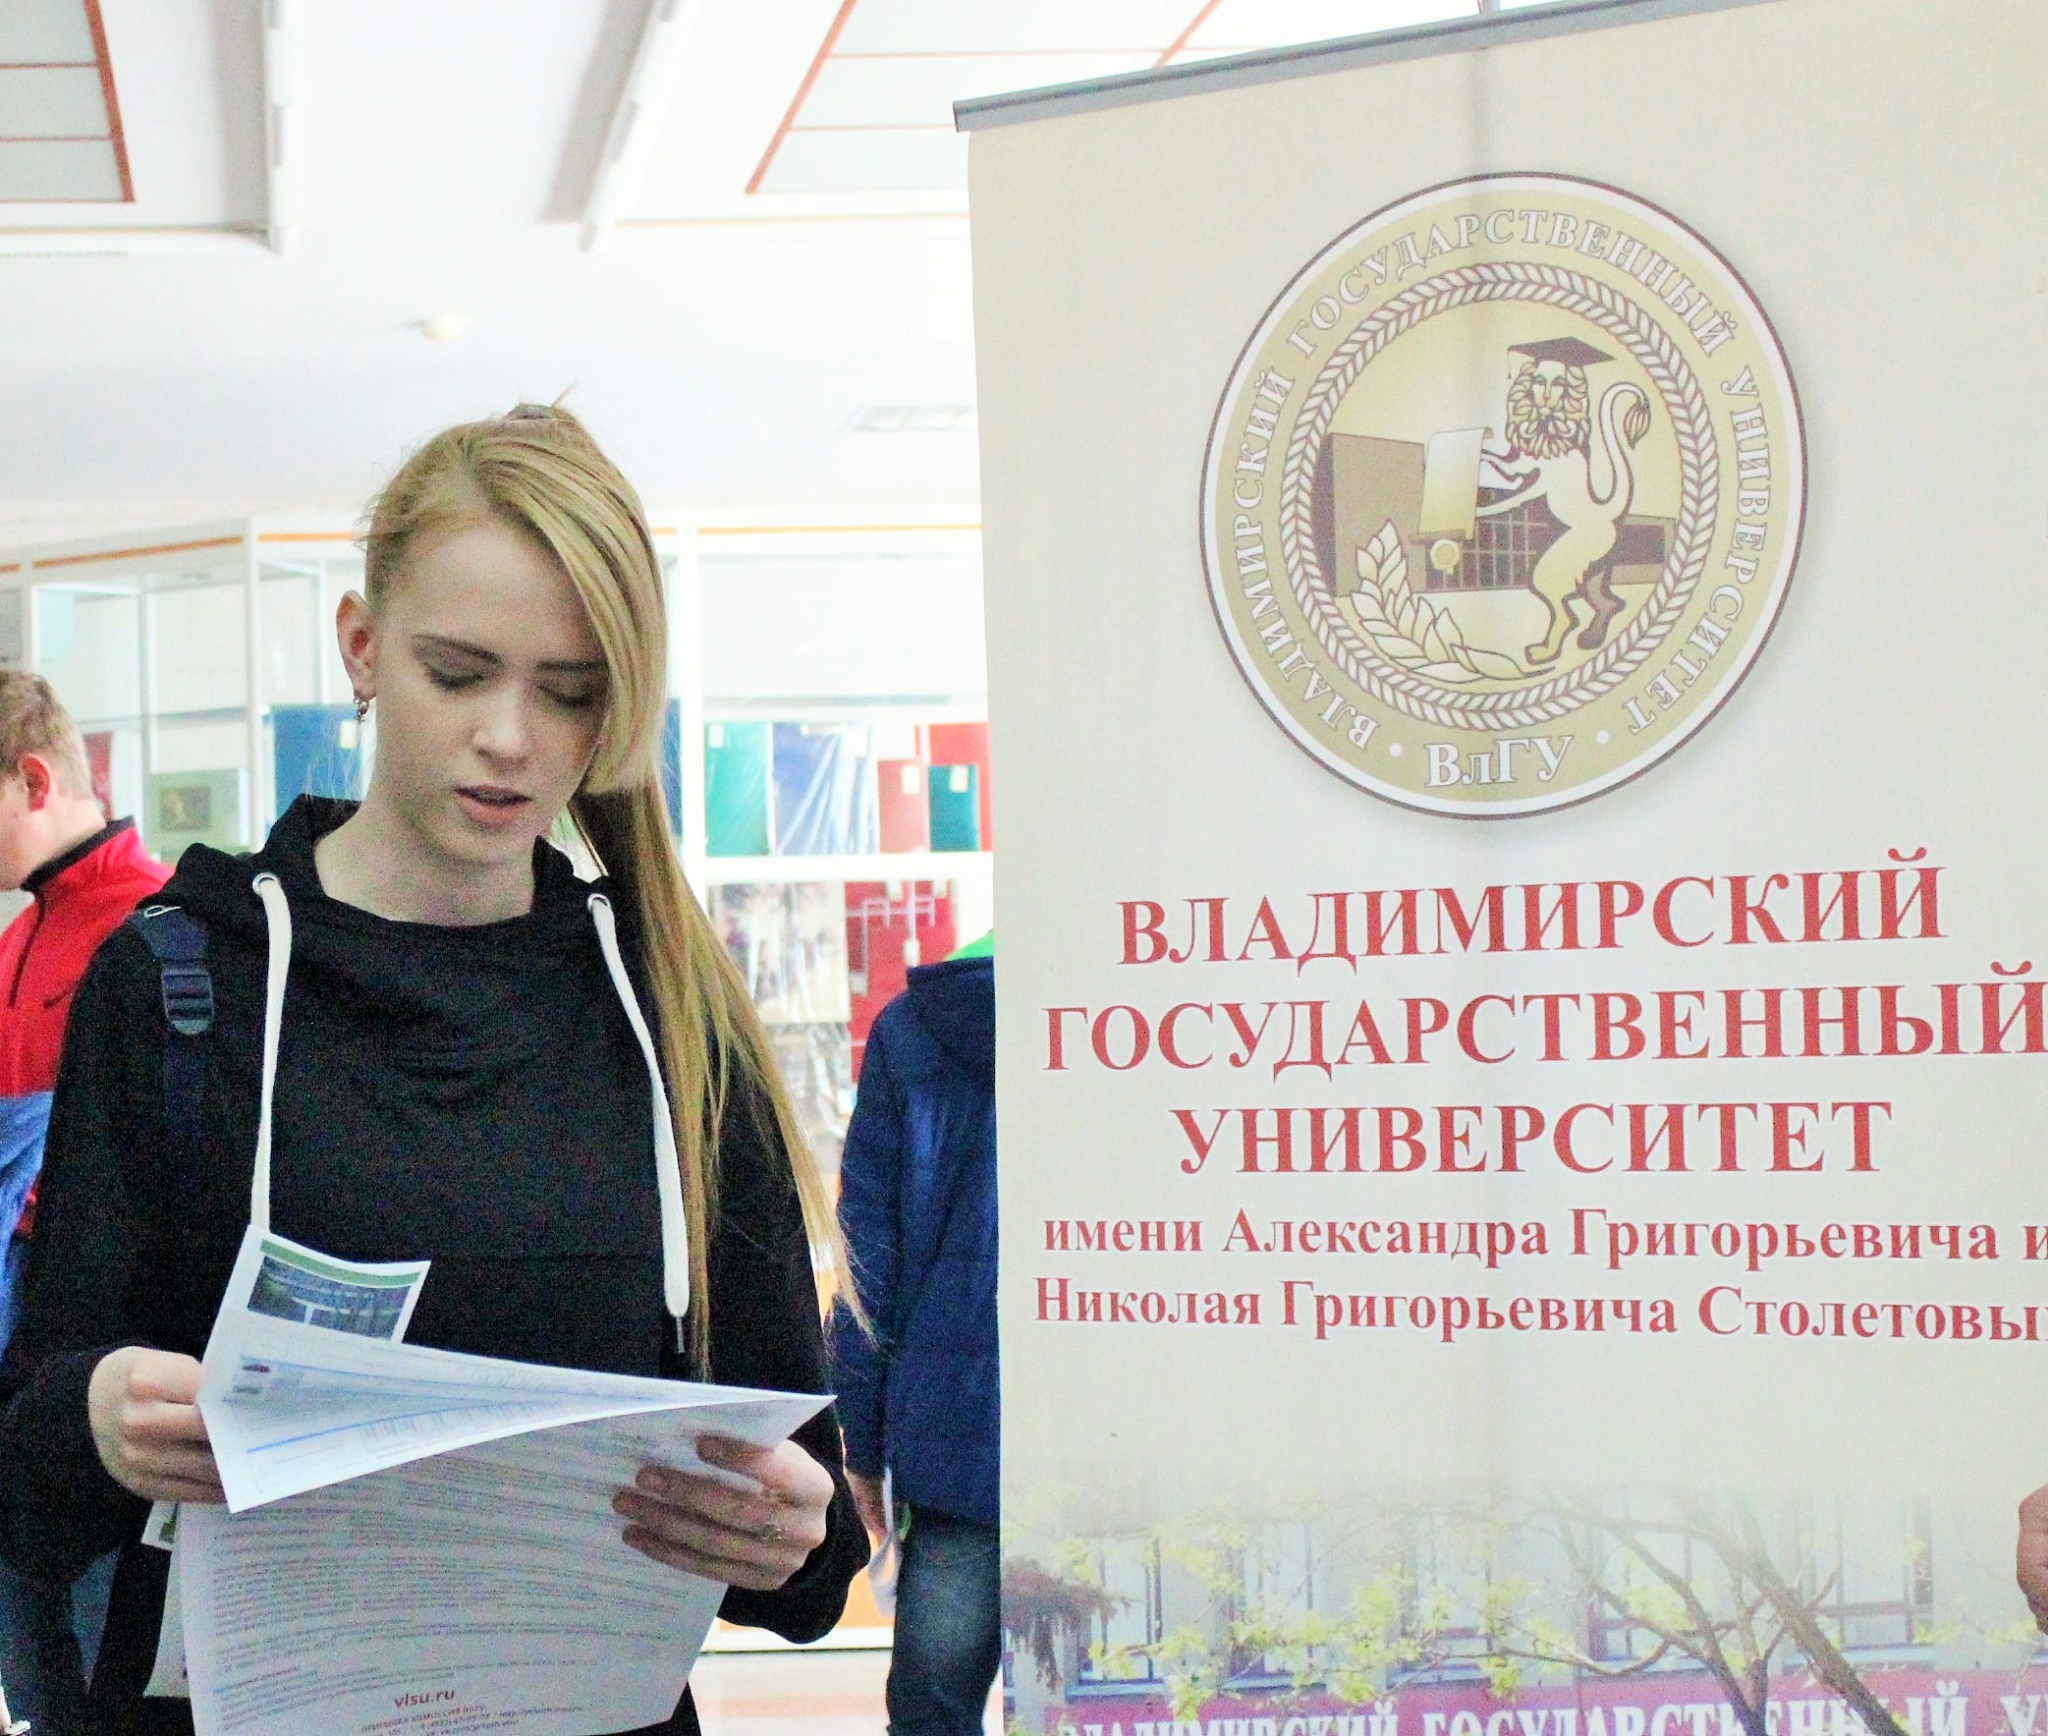 Руководство ВлГУ повысило стипендию для "особенных" студентов до 15 000 руб